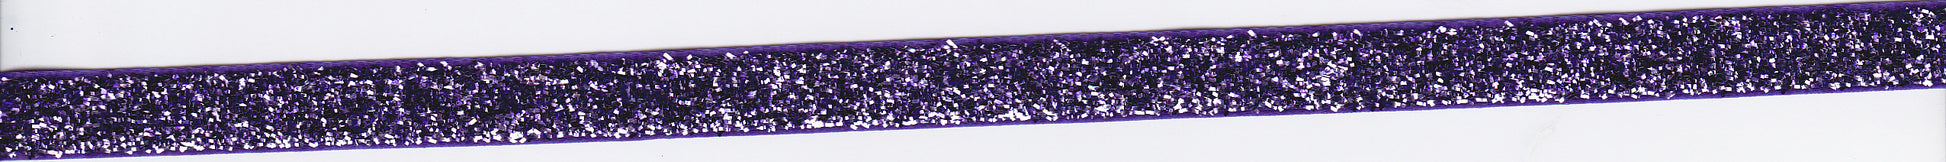 Purple Glitter Velvet Ribbon